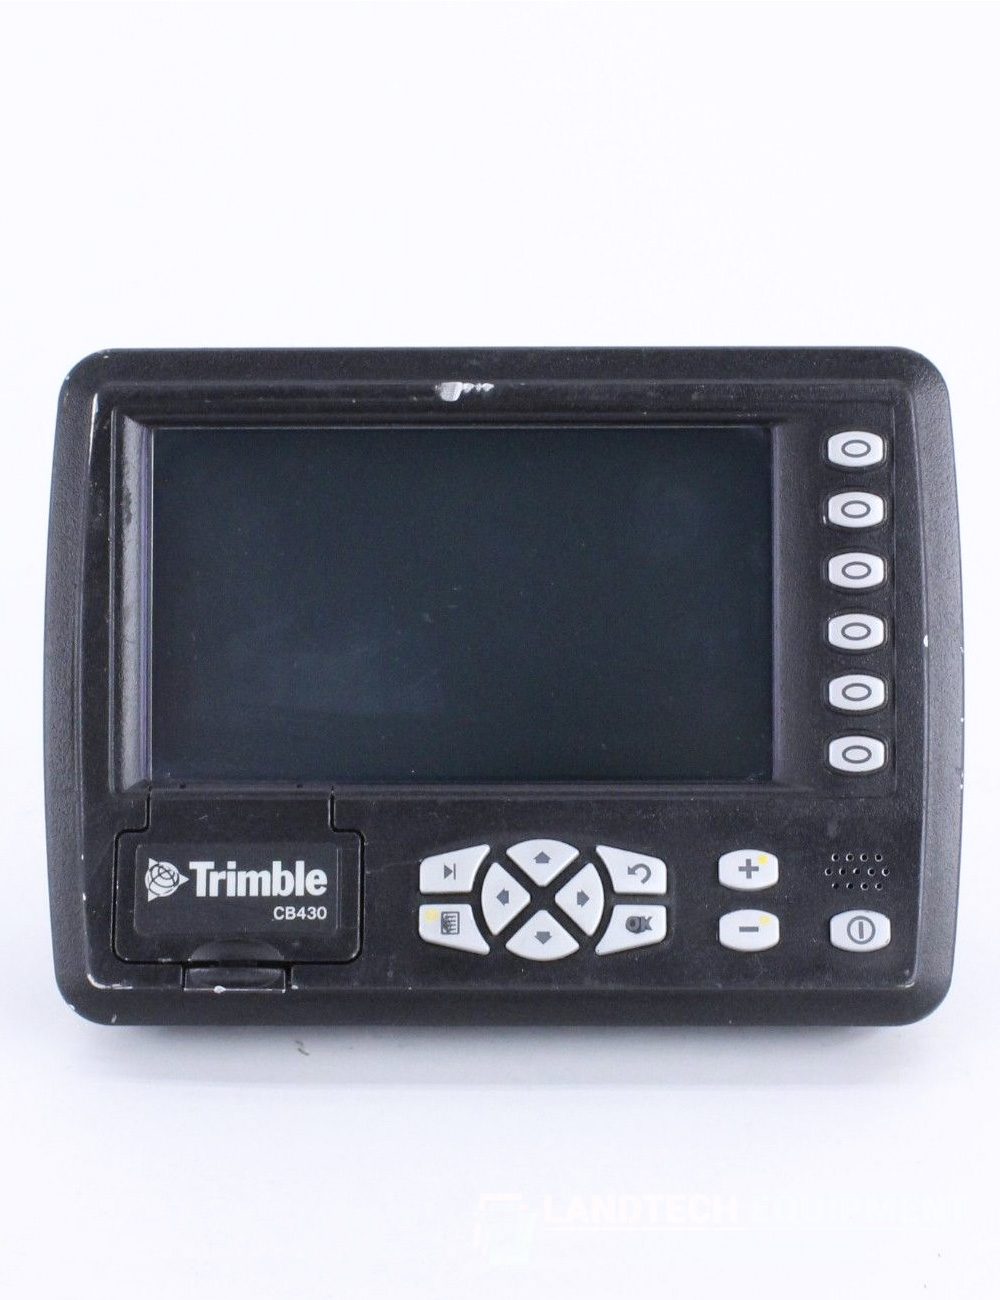 Trimble-GCS900-MS990-Cab-Kit-CB430-Price.jpg